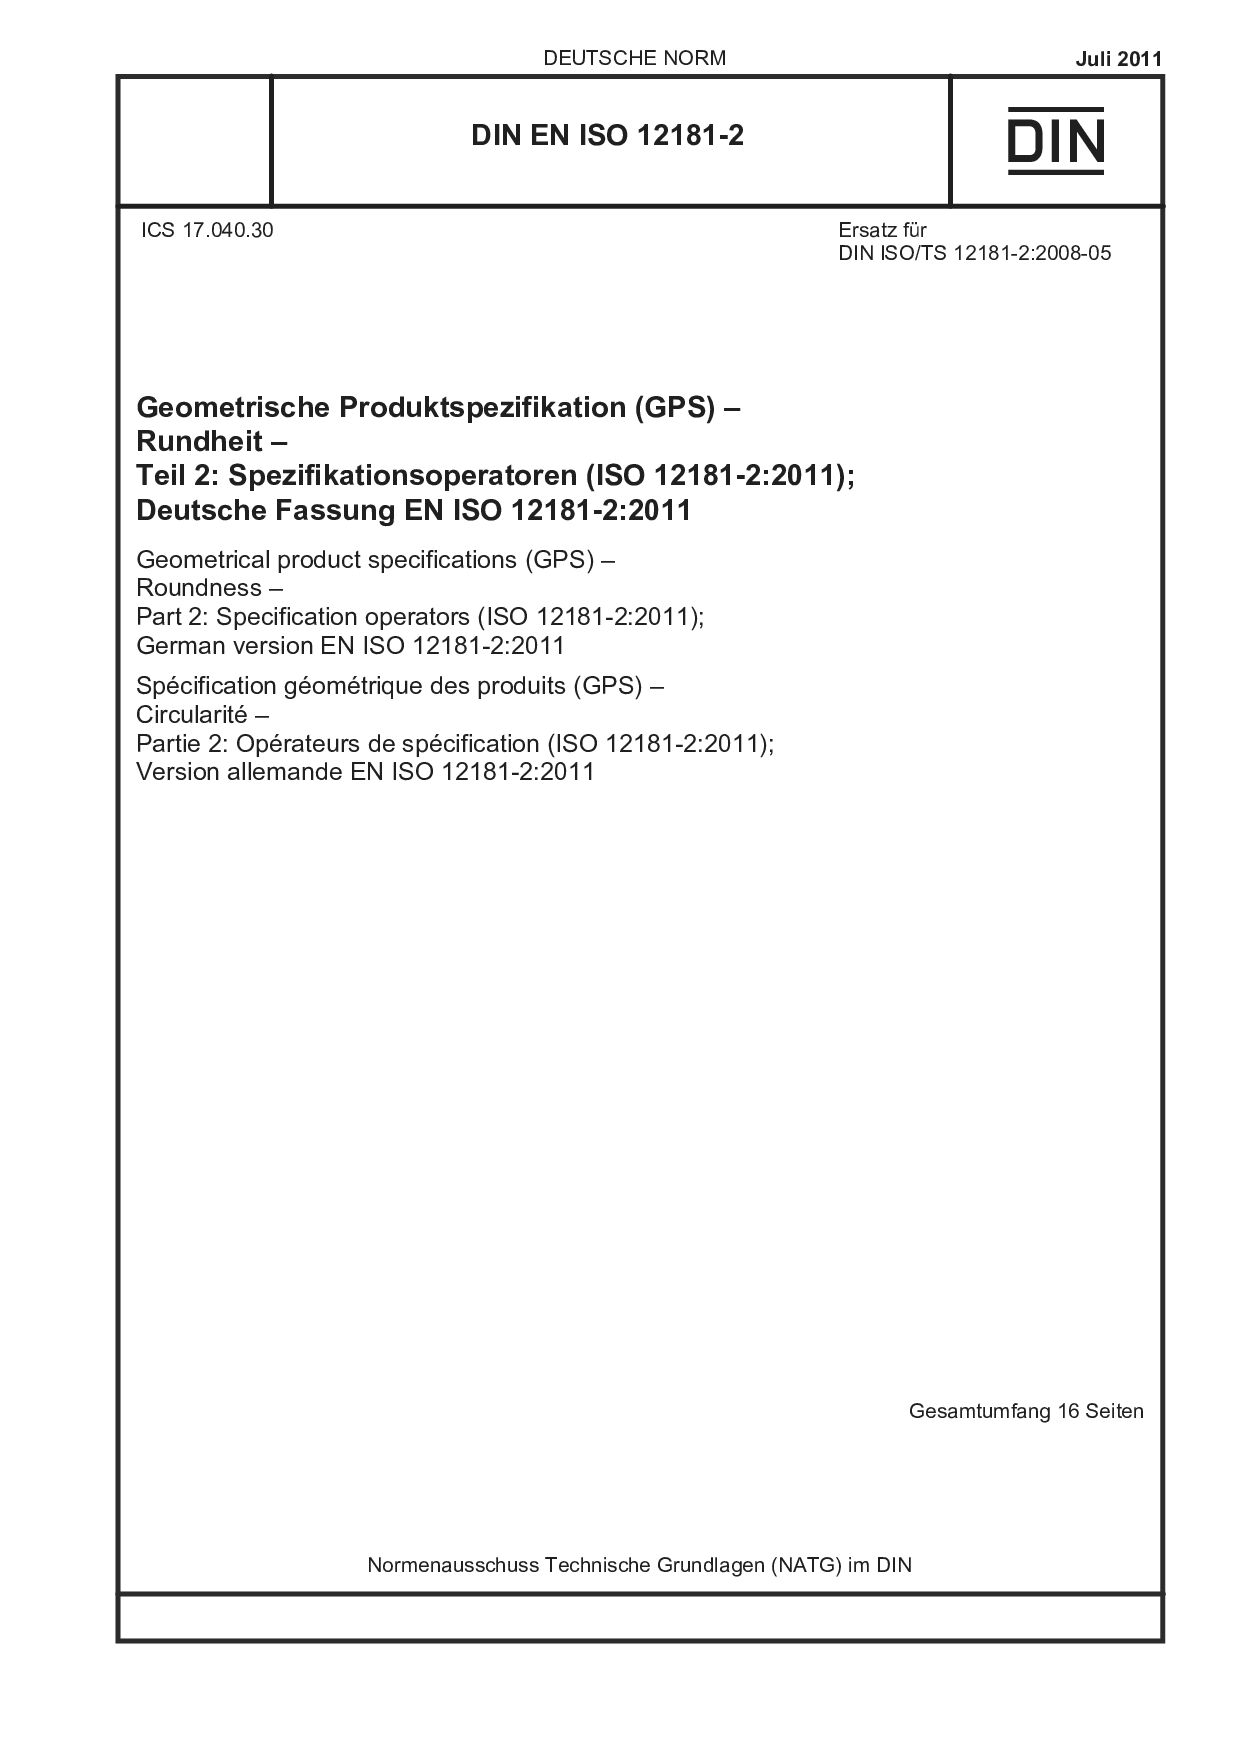 DIN EN ISO 12181-2:2011-07